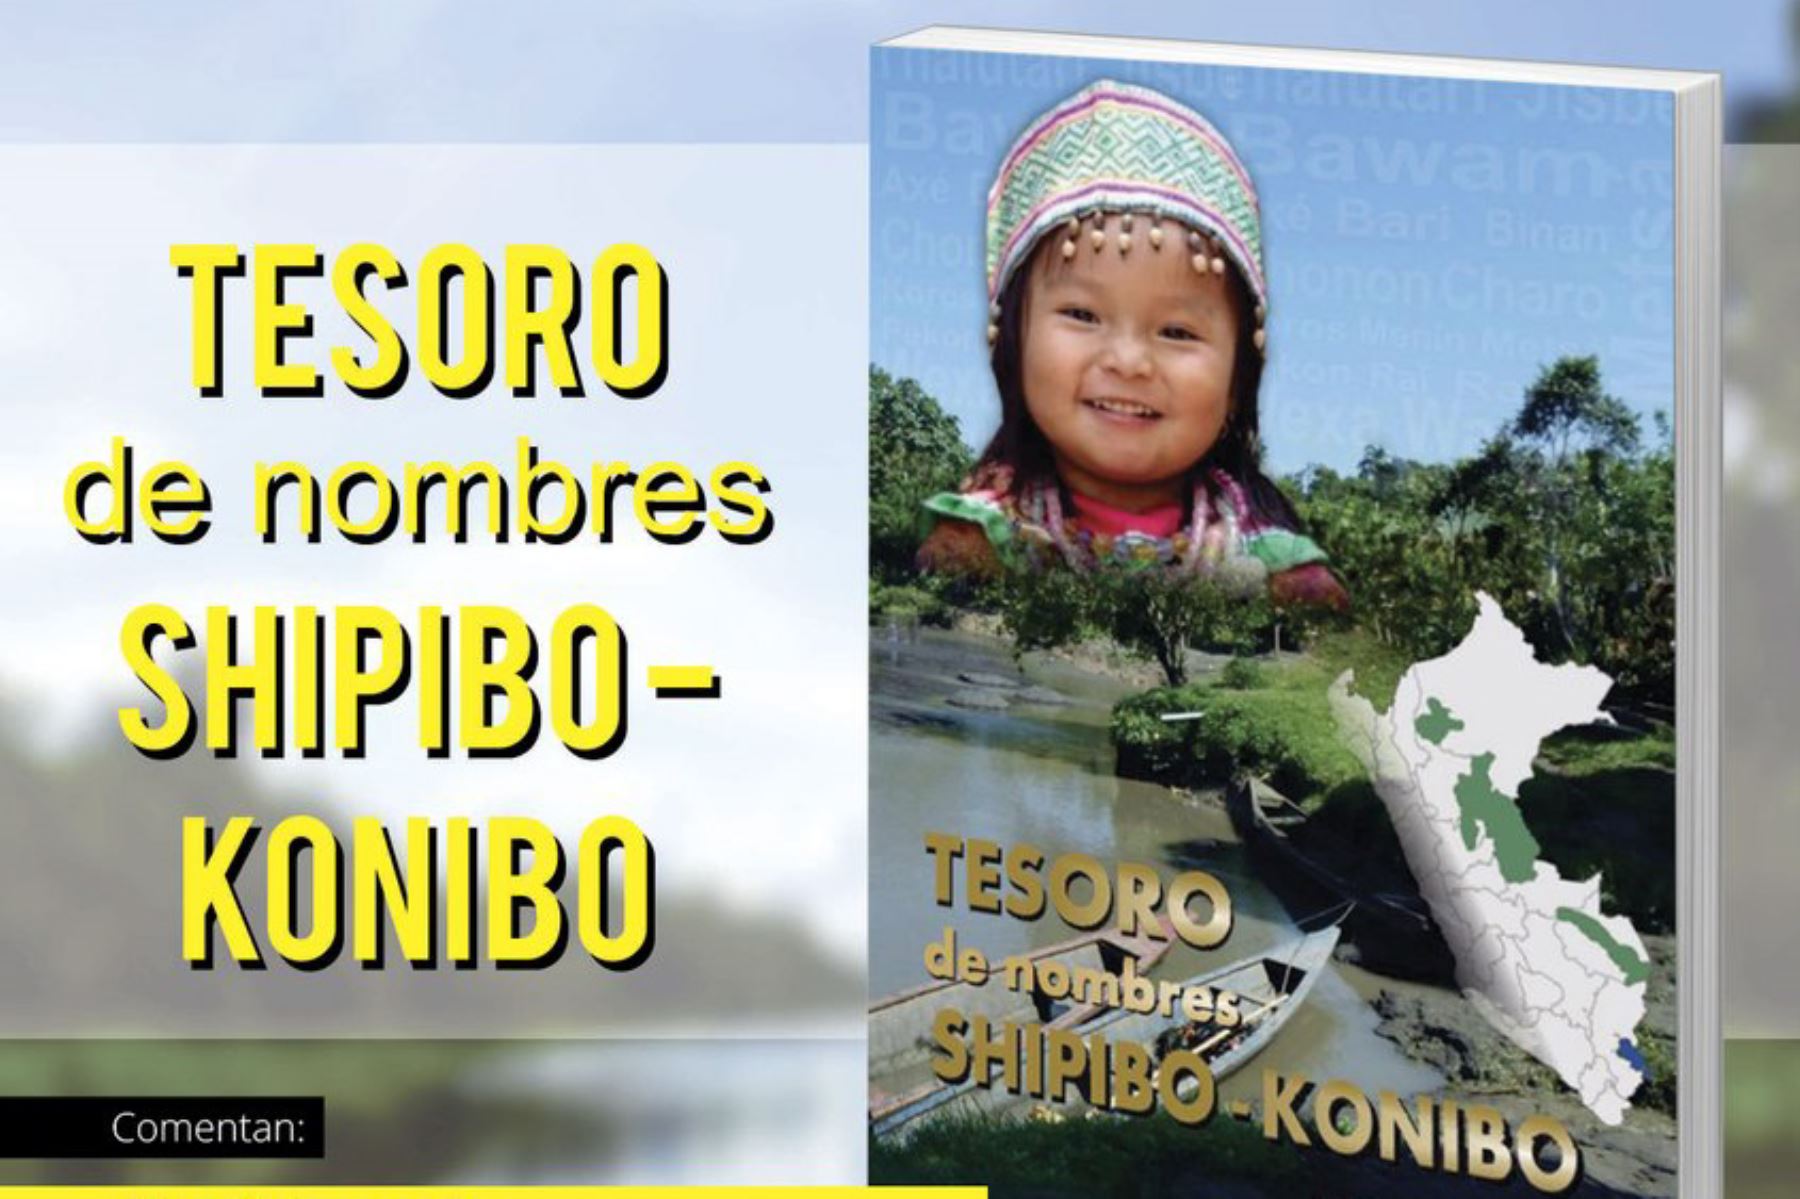 nscribir sus nombres originarios en su Documento Nacional de Identidad (DNI) y otros documentos es ahora posible para más de 35,000 peruanos de la etnia amazónica shipibo-konibo, gracias al listado de nombres que consigna el Registro Nacional de Identificación y Estado Civil (Reniec).